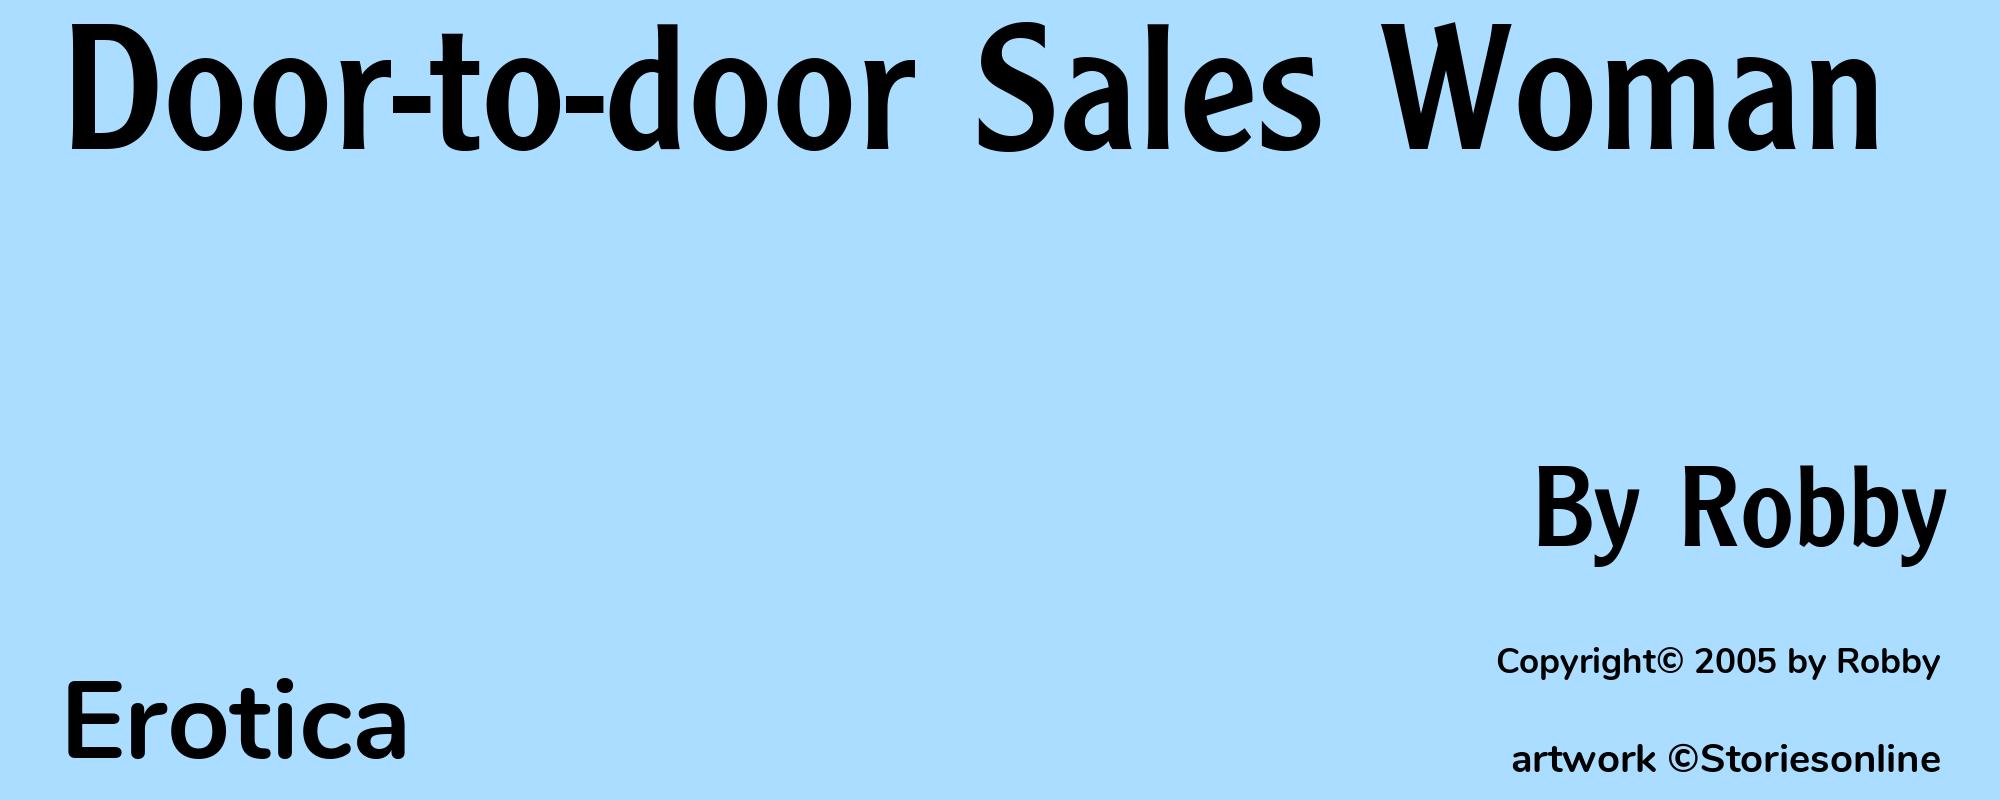 Door-to-door Sales Woman - Cover